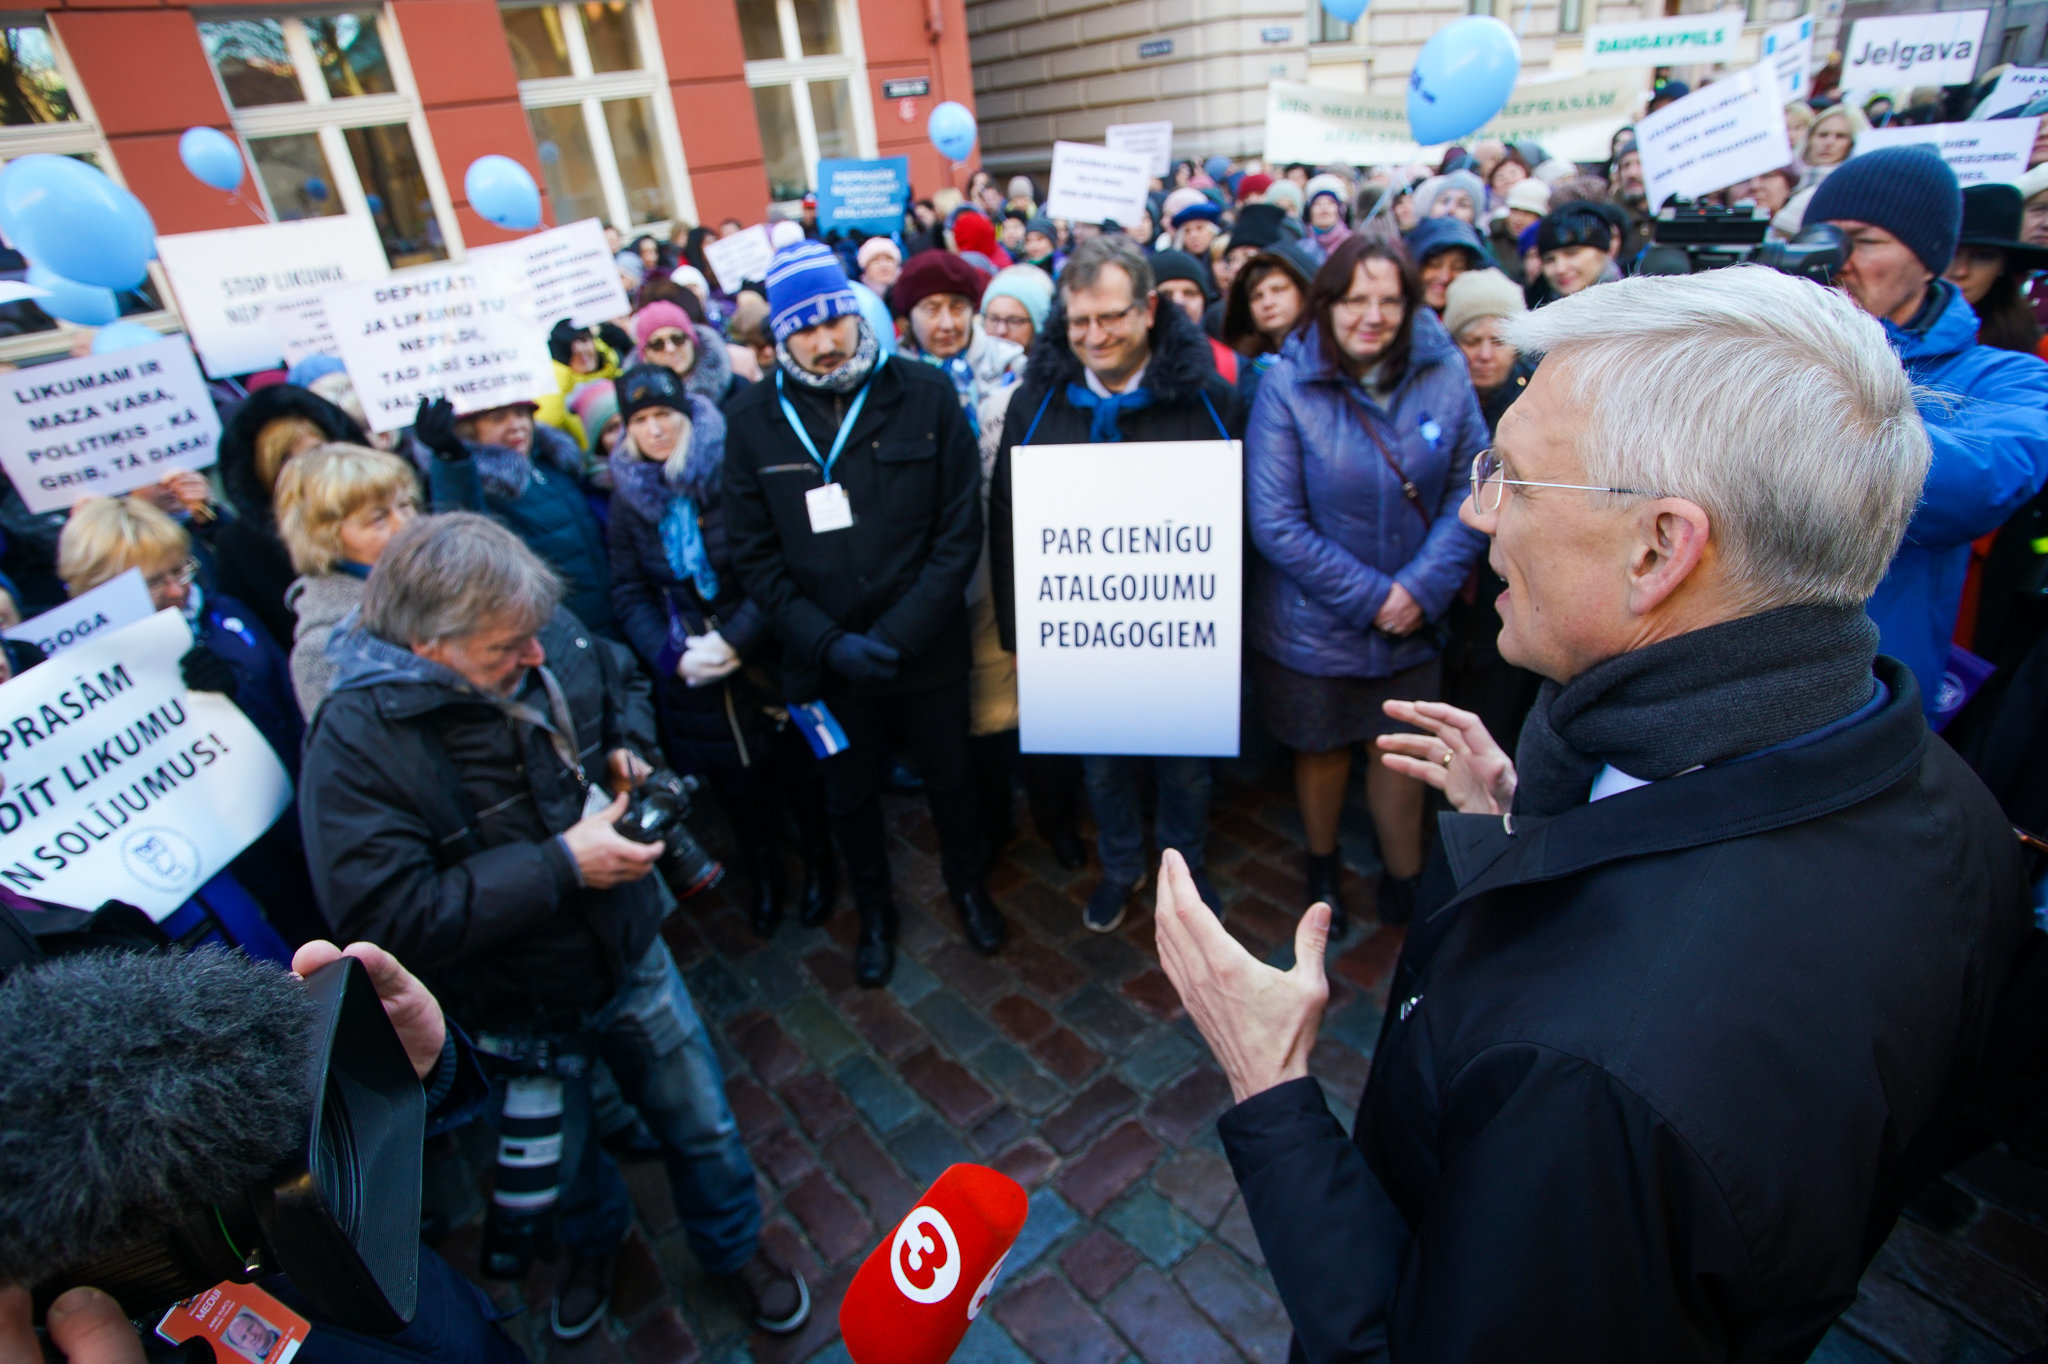 Кришьянис Кариньш на акции протеста Латвийского профсоюза работников образования и науки, 20 марта 2019 